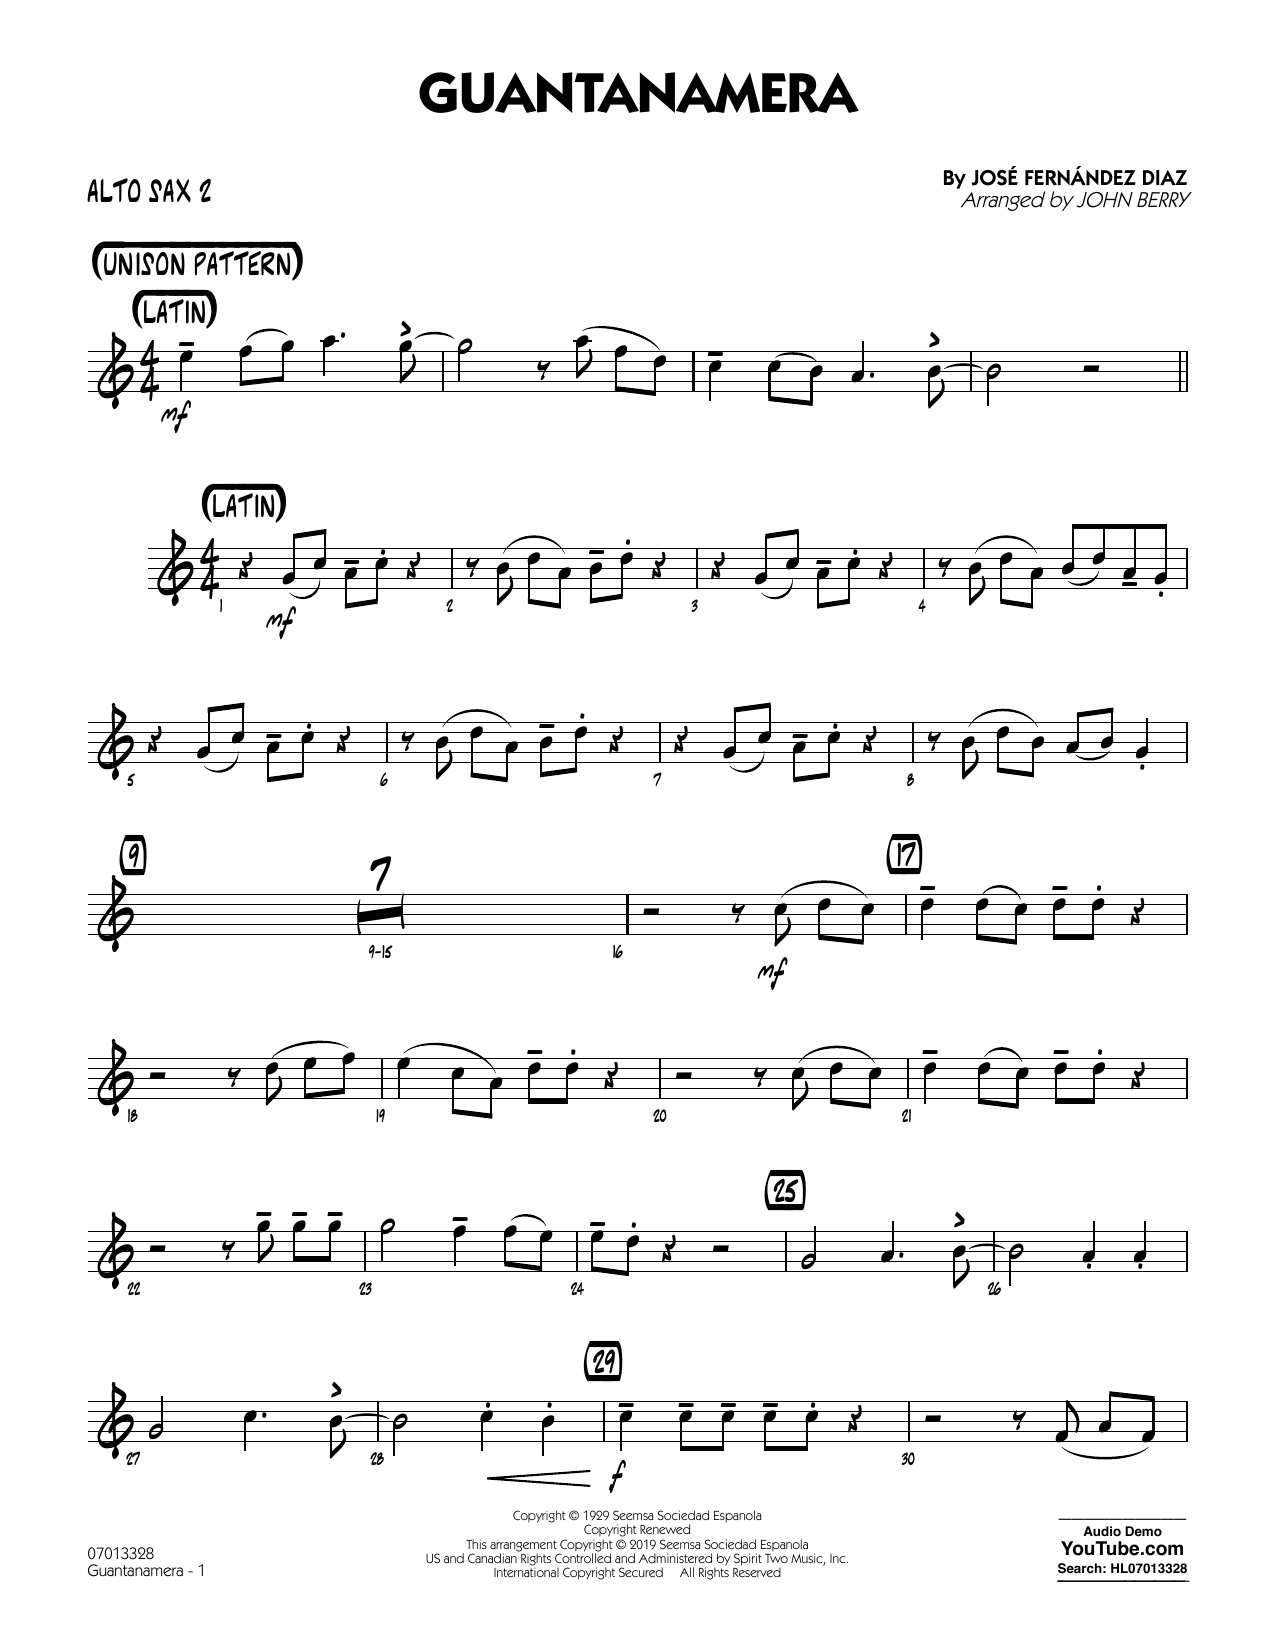 José Fernández Diaz Guantanamera (arr. John Berry) - Alto Sax 2 Sheet Music Notes & Chords for Jazz Ensemble - Download or Print PDF